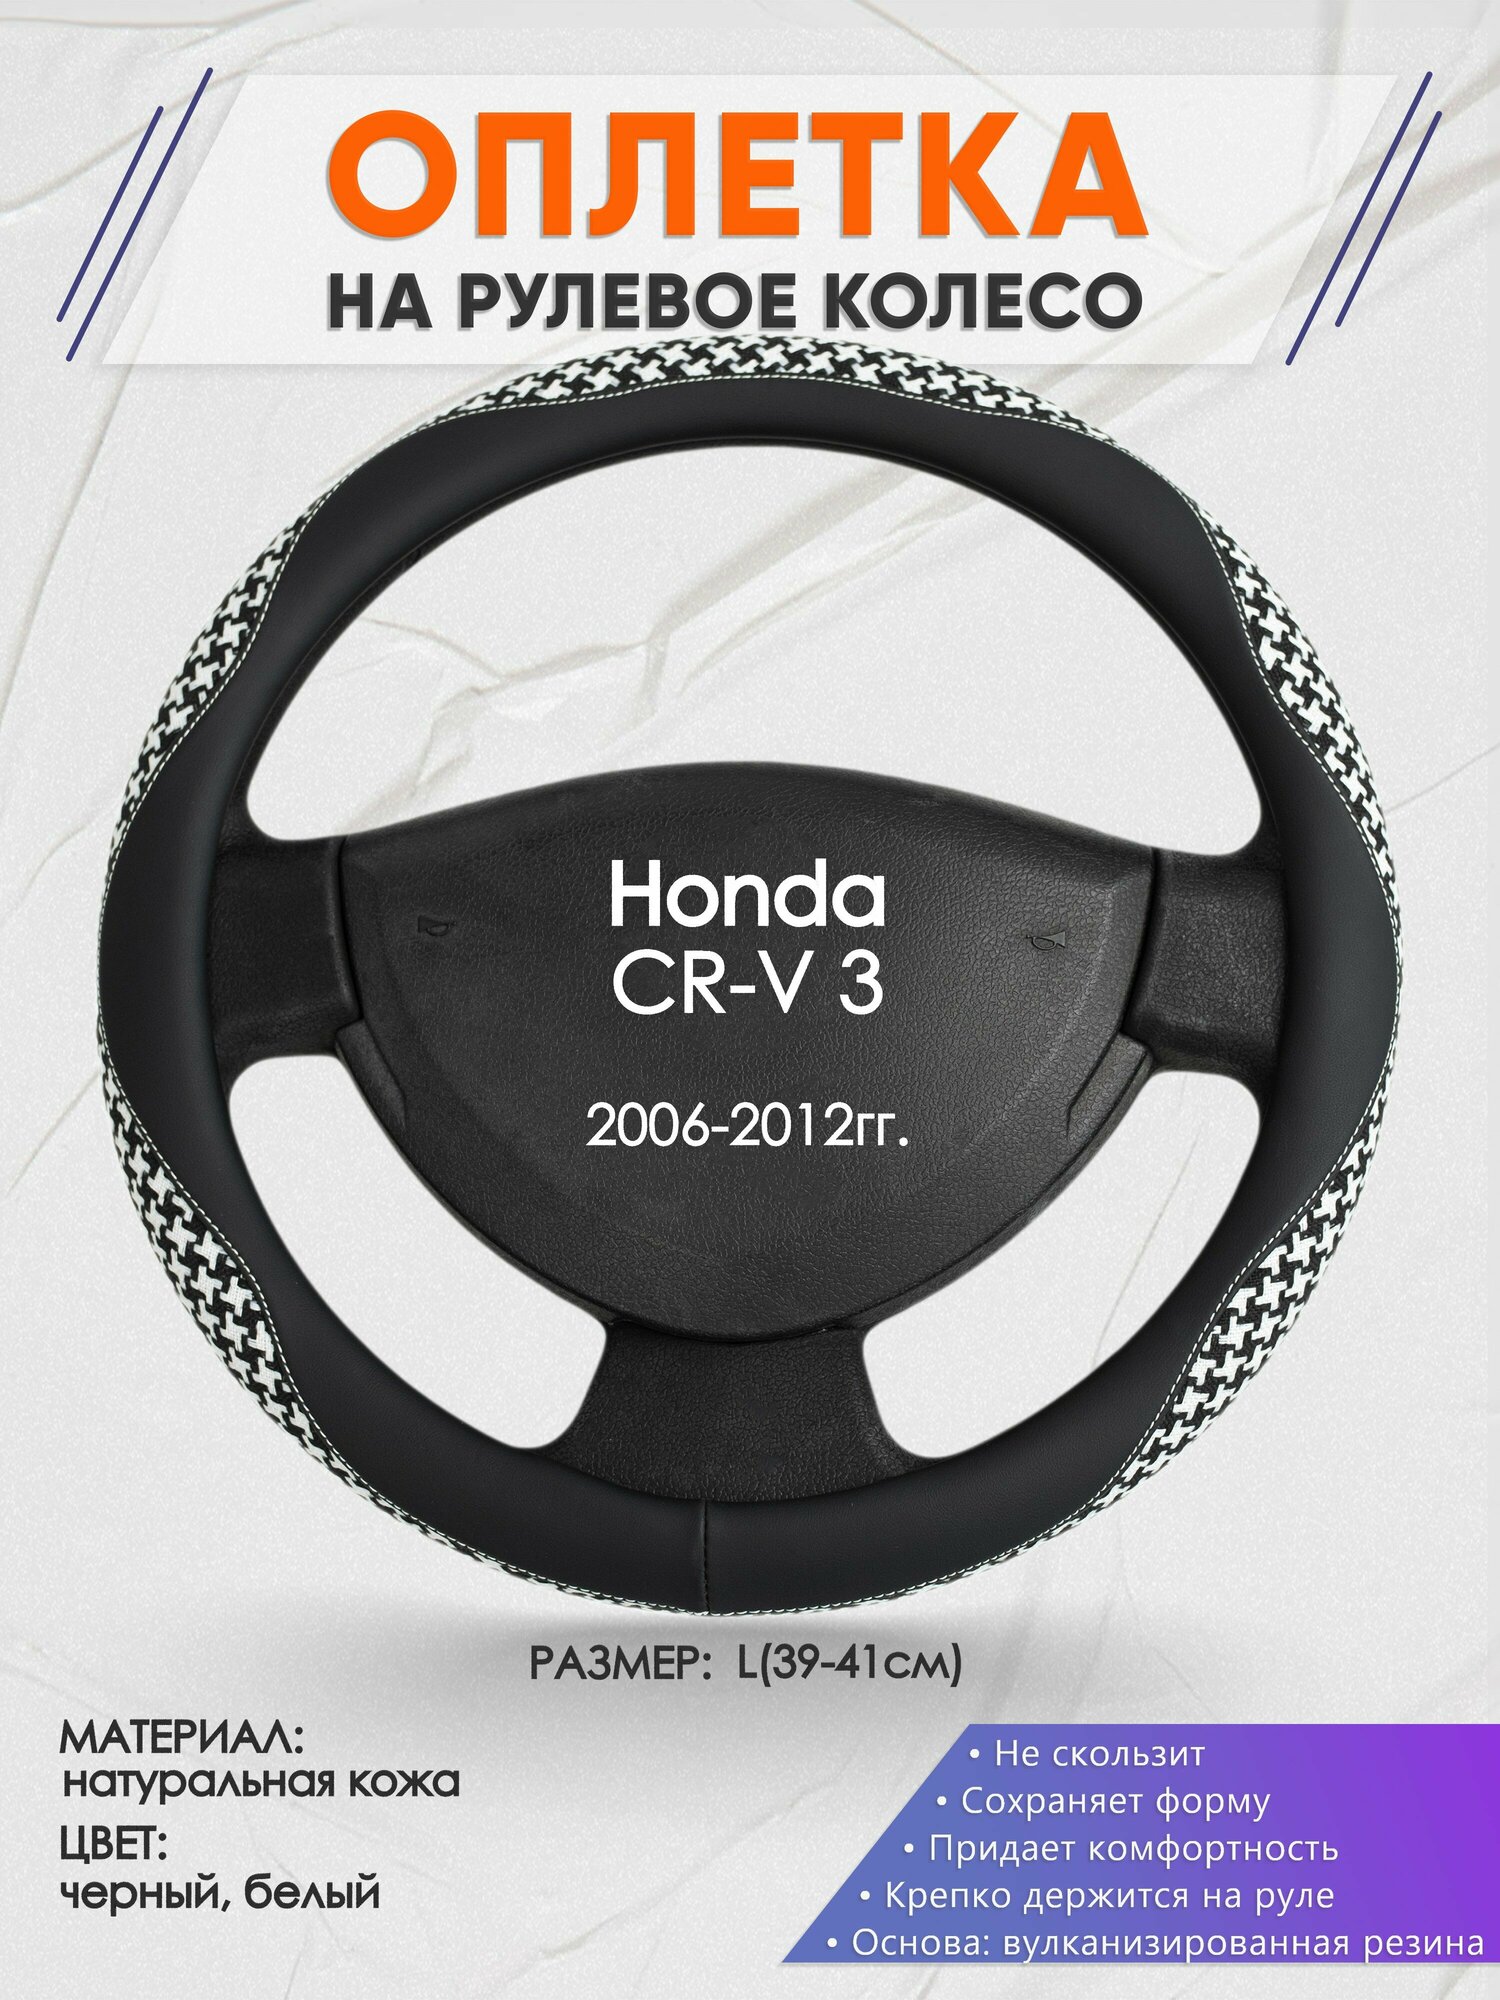 Оплетка на руль для Honda CR-V 3(Хонда срв 3) 2006-2012, L(39-41см), Натуральная кожа 21